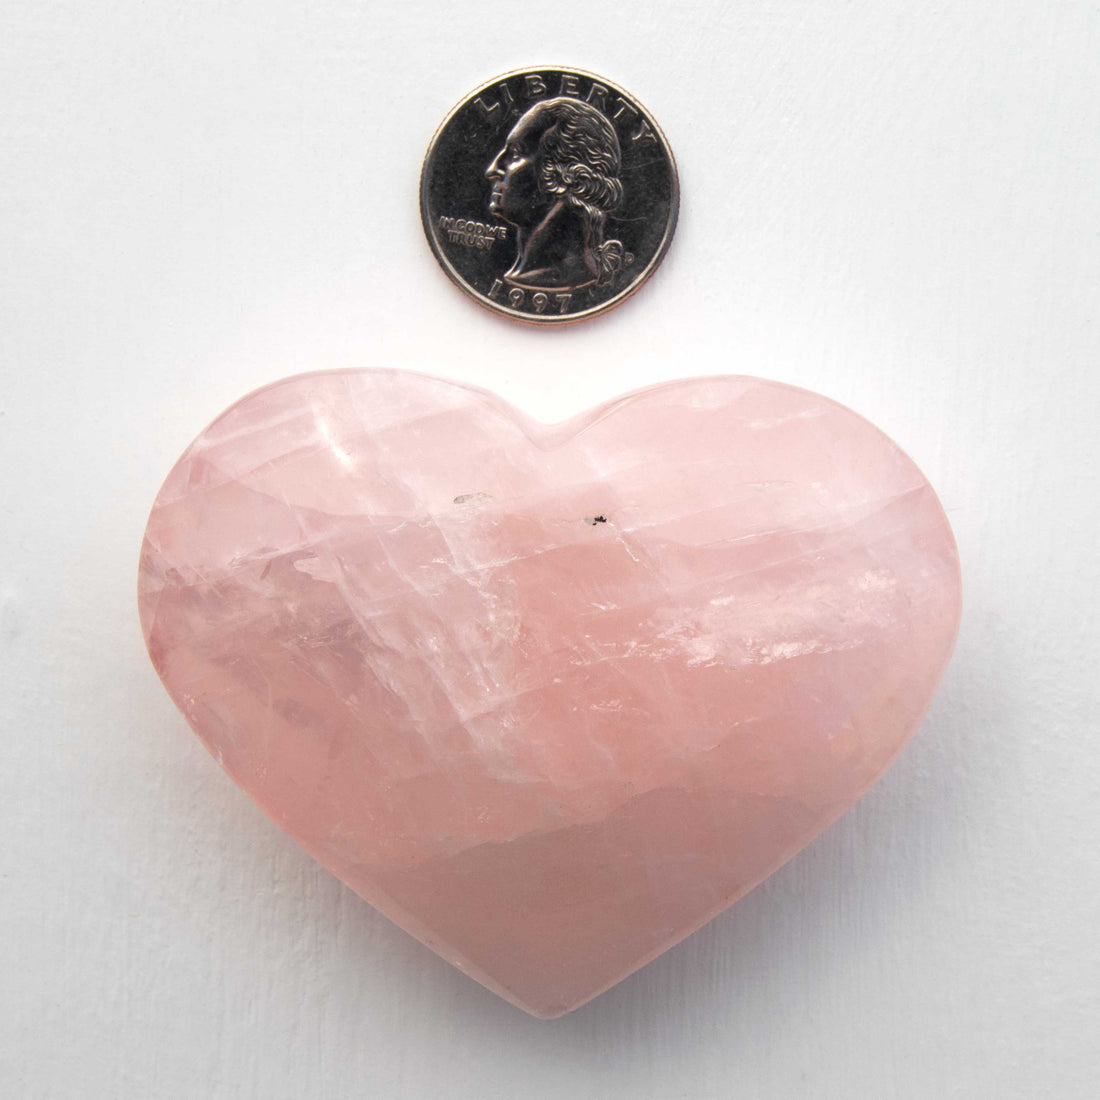 Rose Quartz - Heart, A- Grade, Polished